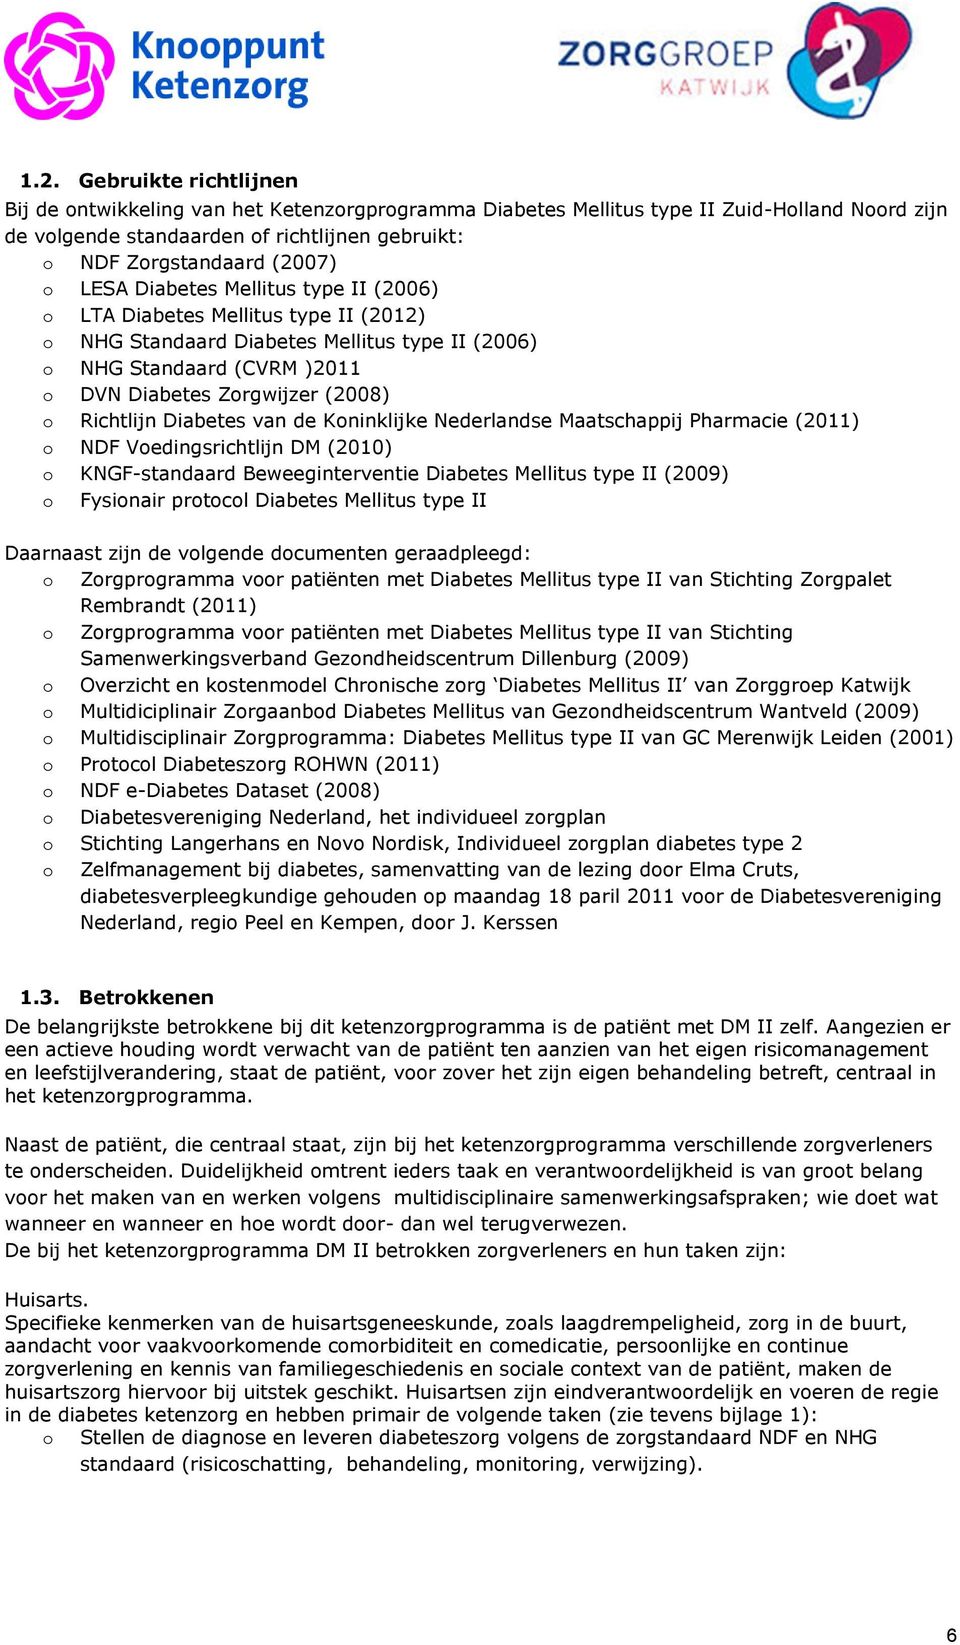 Richtlijn Diabetes van de Koninklijke Nederlandse Maatschappij Pharmacie (2011) o NDF Voedingsrichtlijn DM (2010) o KNGF-standaard Beweeginterventie Diabetes Mellitus type II (2009) o Fysionair